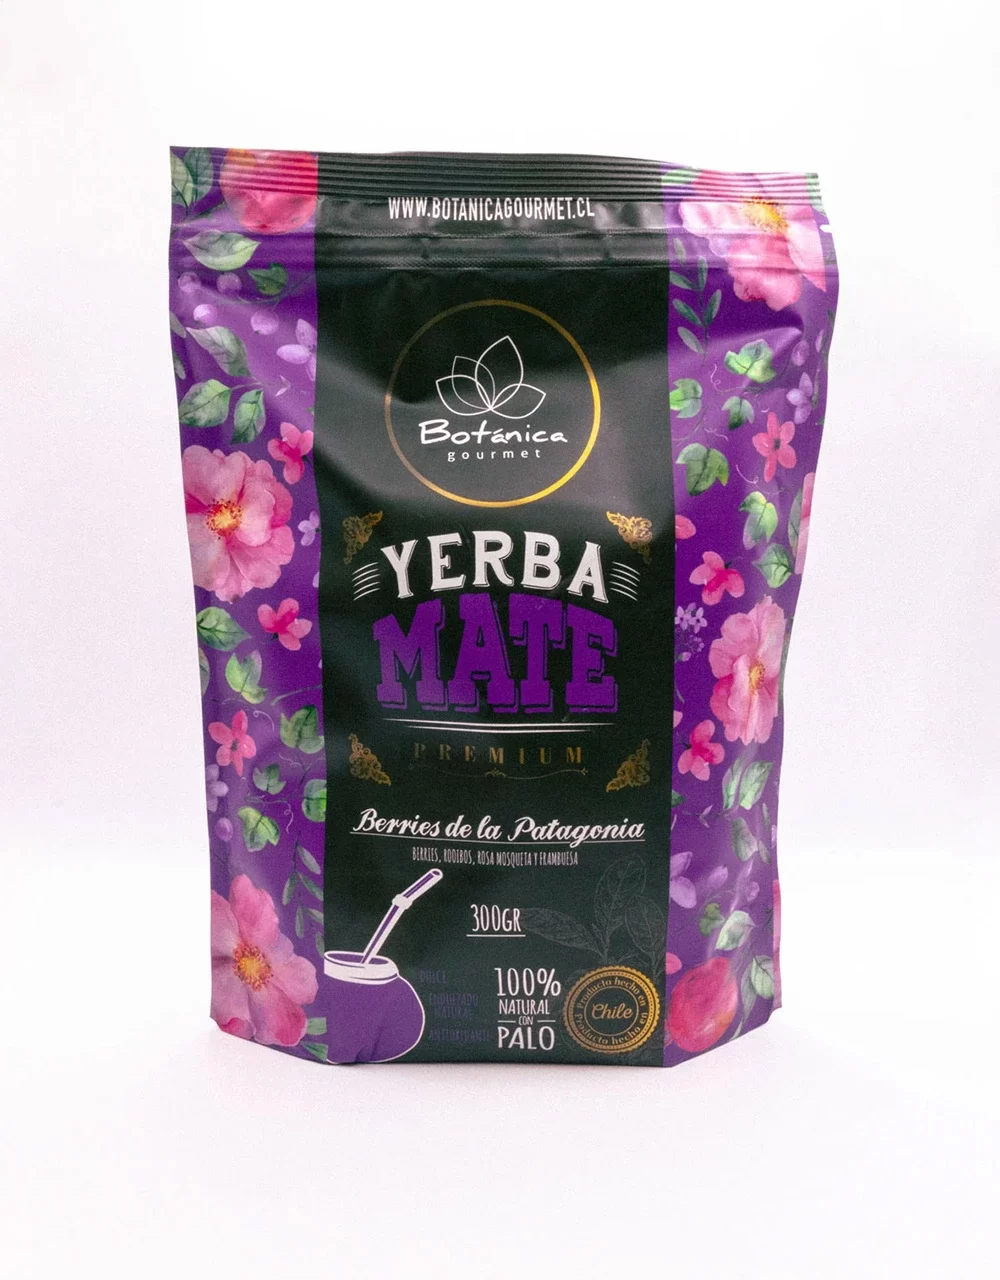 yerba-mate-berries-de-la-patagonia-premium-300-grs-botanica-gourmet-01